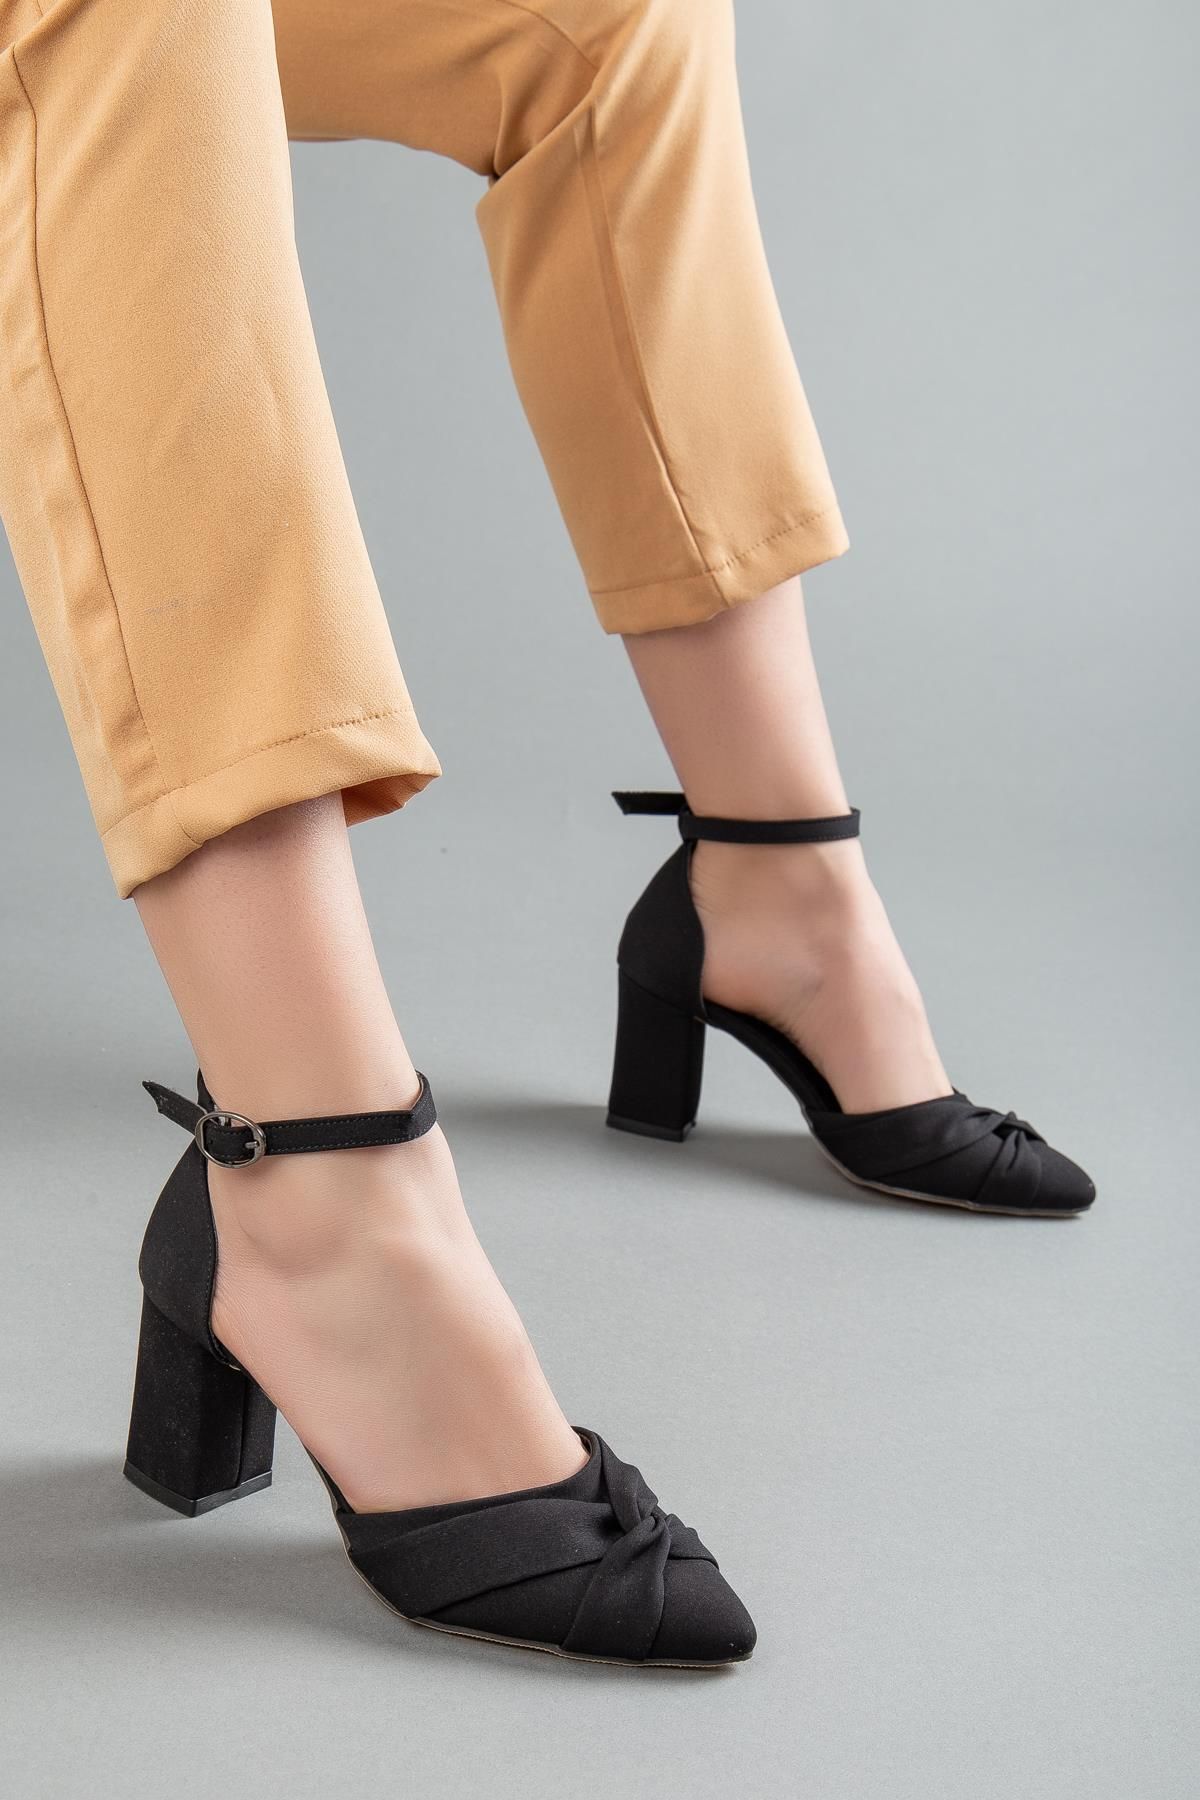 Dilimler Ayakkabı Saten Fiyonk Baretli Siyah Büyük Numara Kadın Ayakkabısı Topuklu